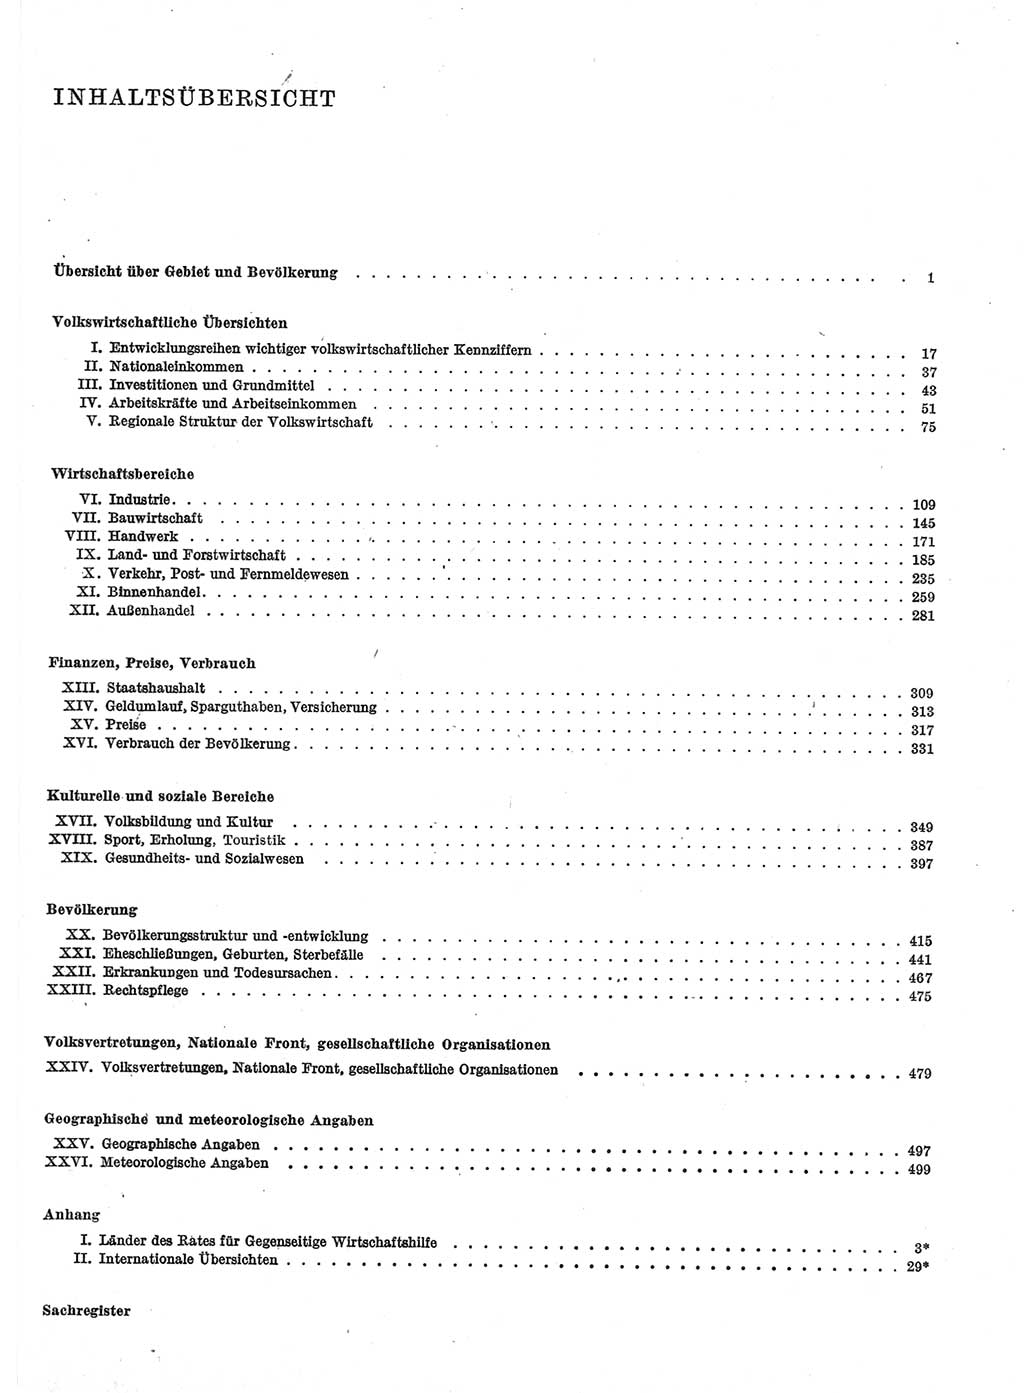 Statistisches Jahrbuch der Deutschen Demokratischen Republik (DDR) 1974, Seite 5 (Stat. Jb. DDR 1974, S. 5)